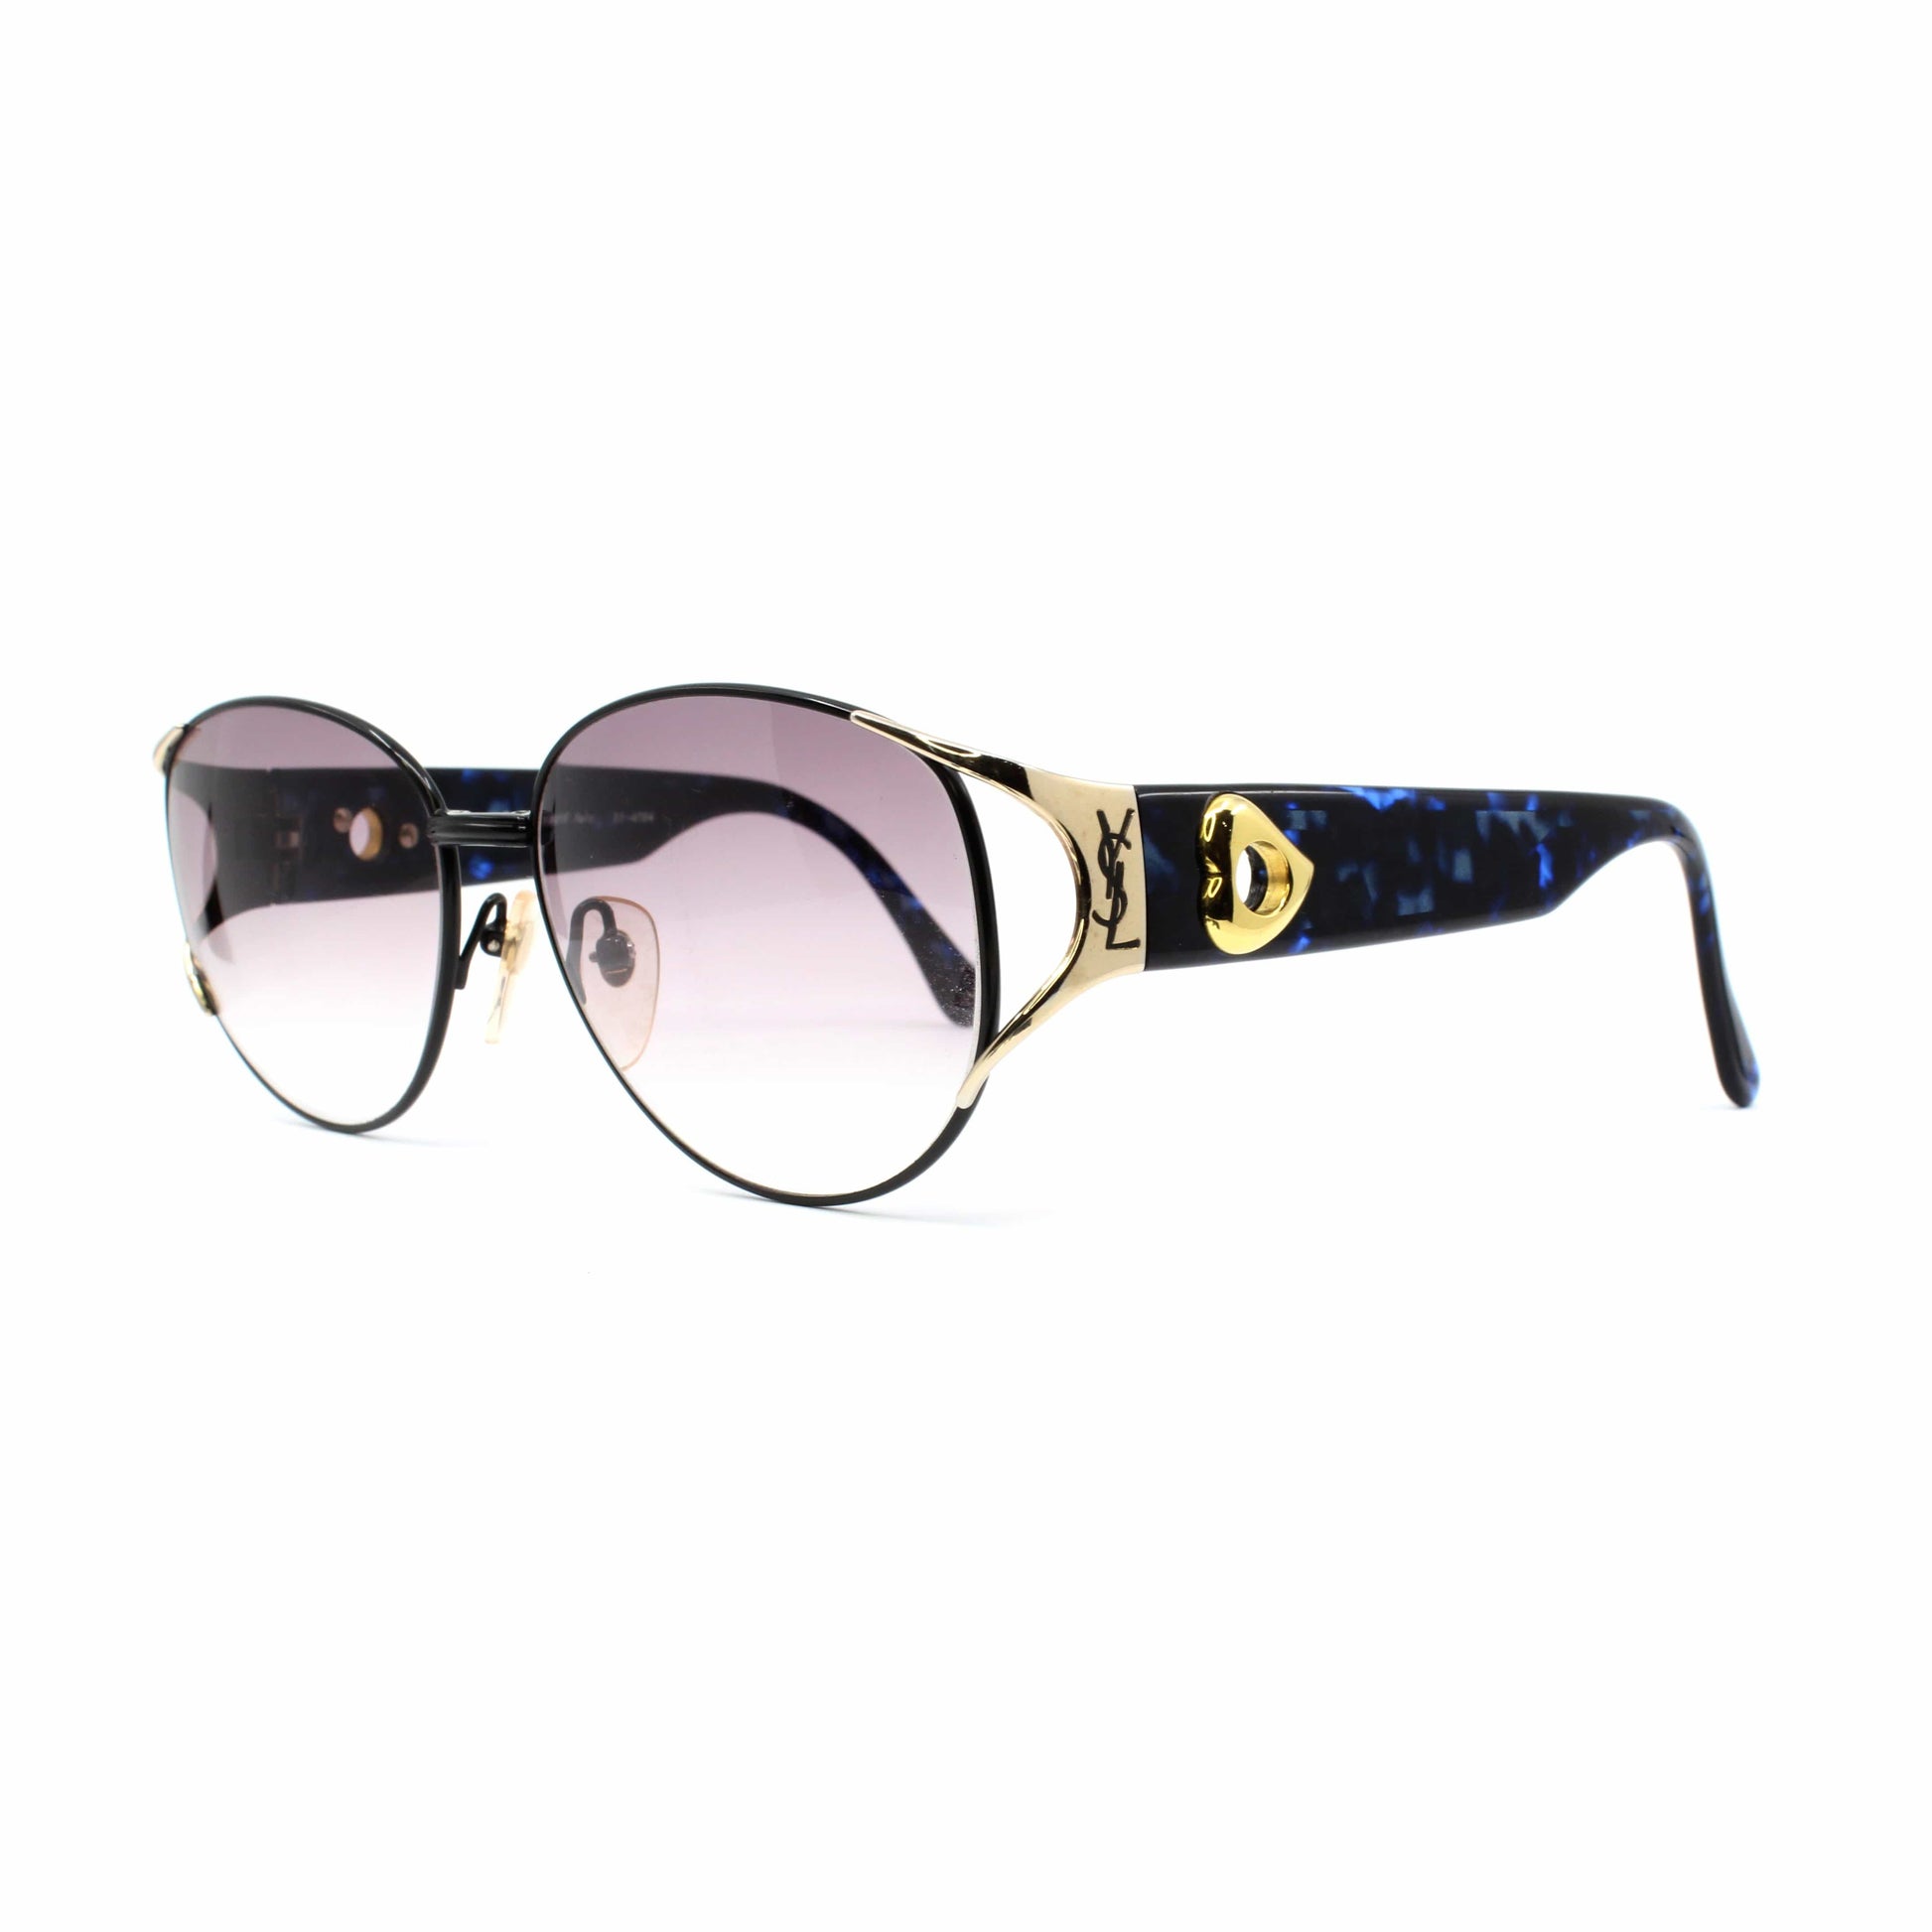 Yves Saint Laurent YSL Gold Logo Sunglasses